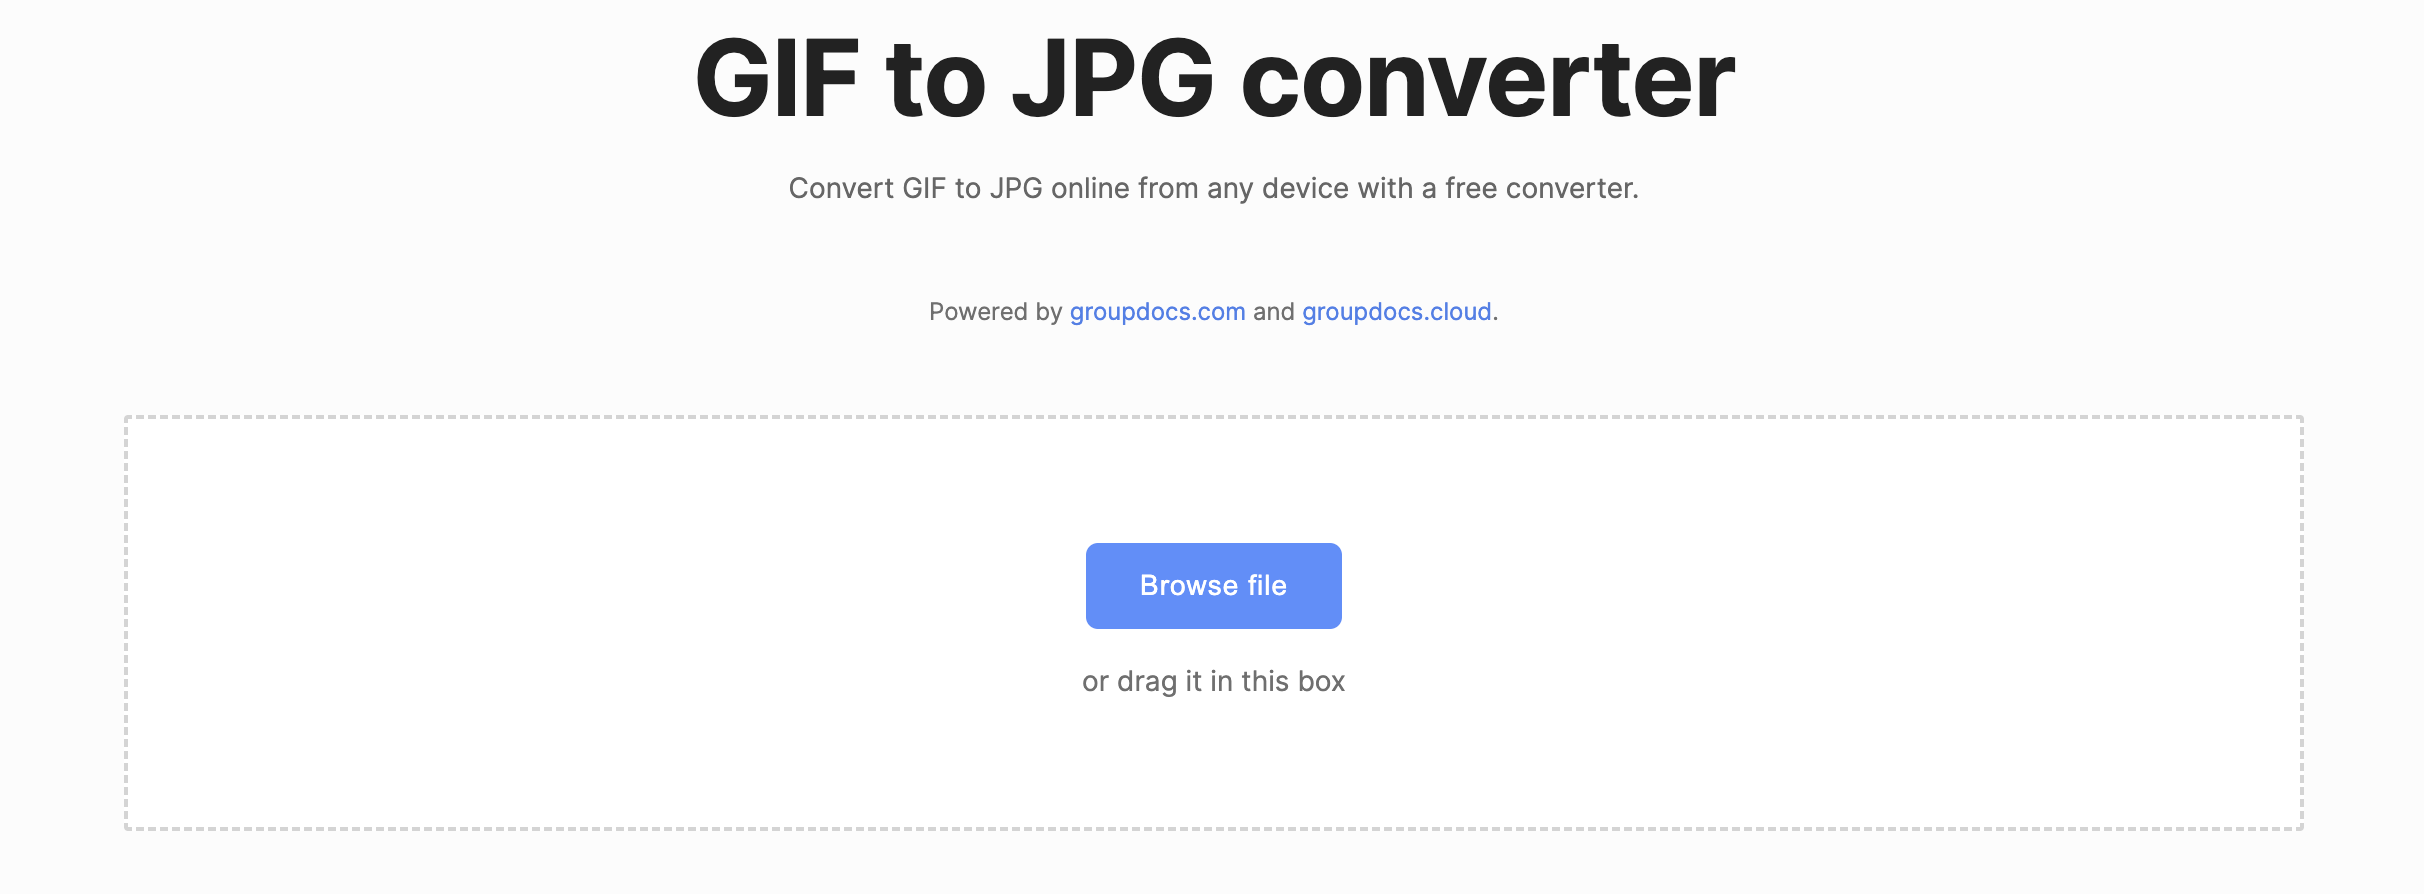 pengonversi GIF ke JPG online